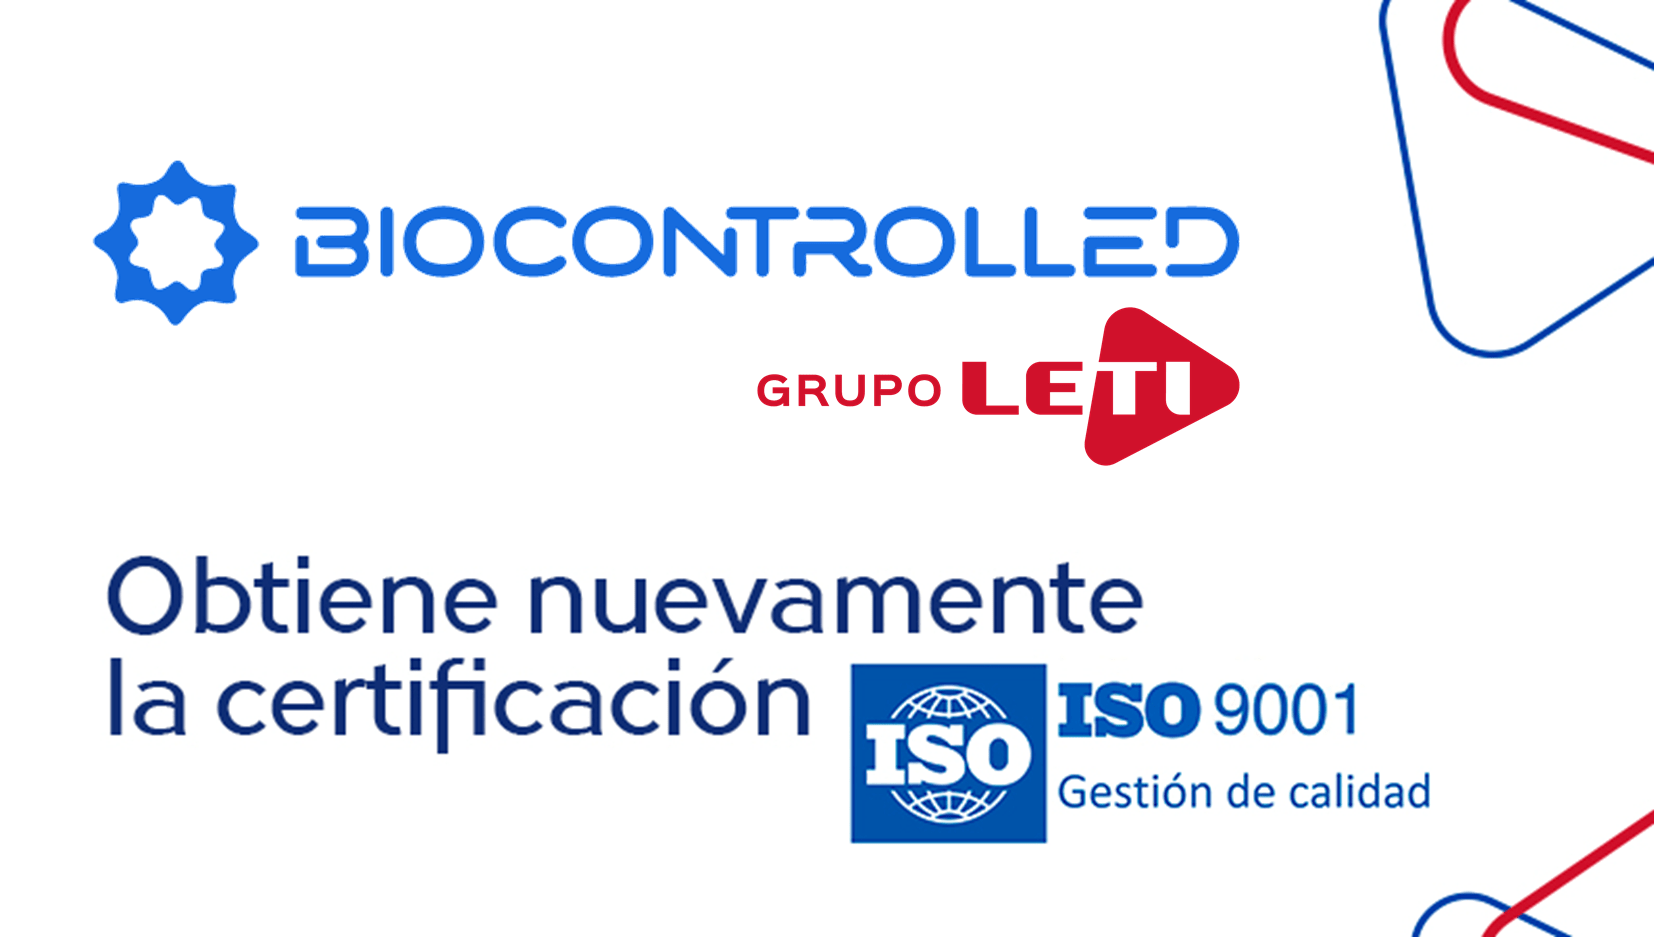 Industrias Biocontrolled C A De Grupo Leti Obtiene Nuevamente La